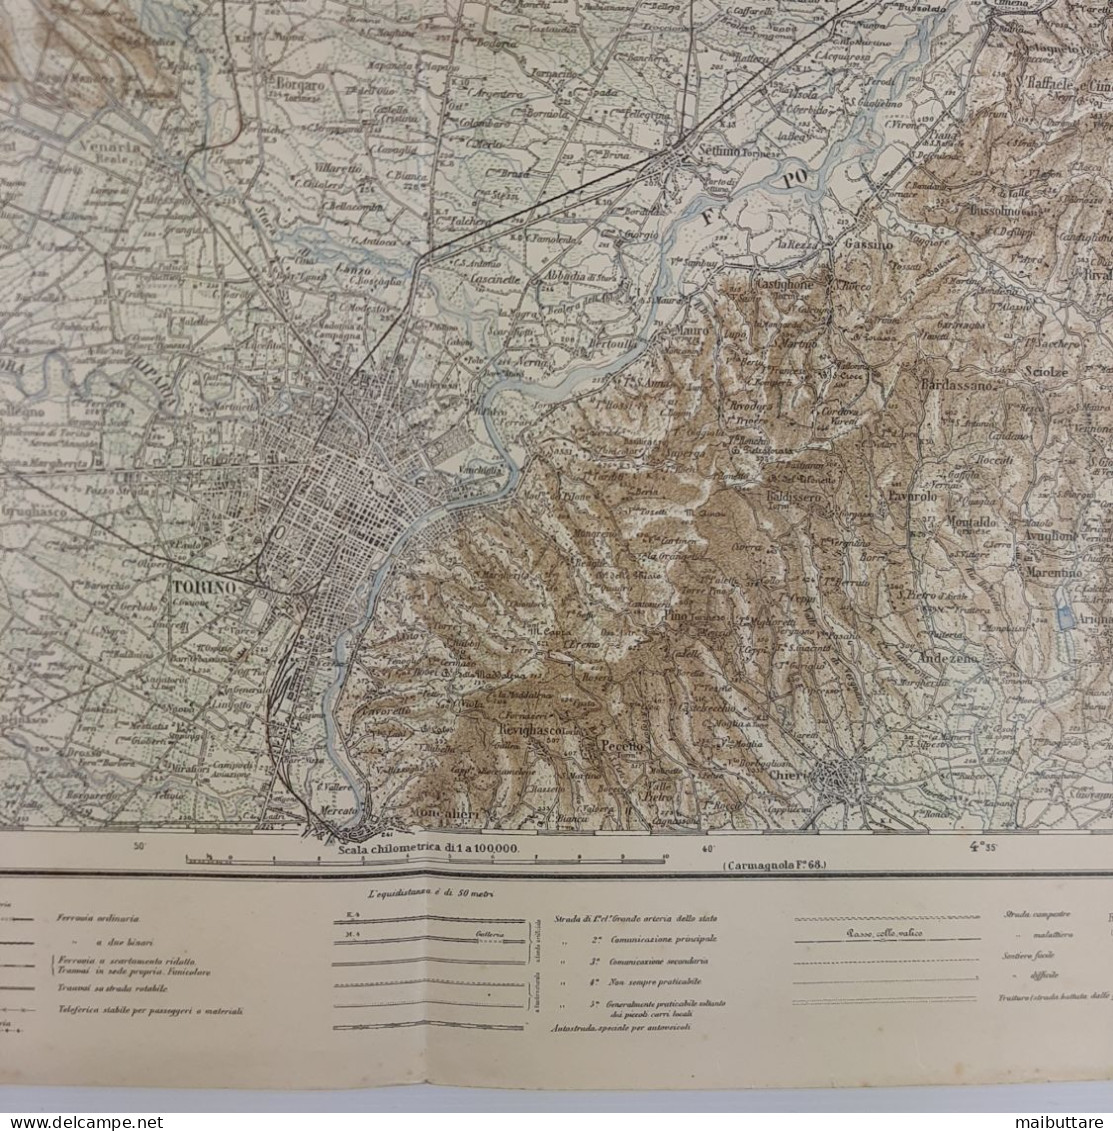 Carta Geografica, Cartina Mappa Militare Torino Piemonte F56 Della Carta D'Italia Scala 1:25.000 - Cartes Géographiques